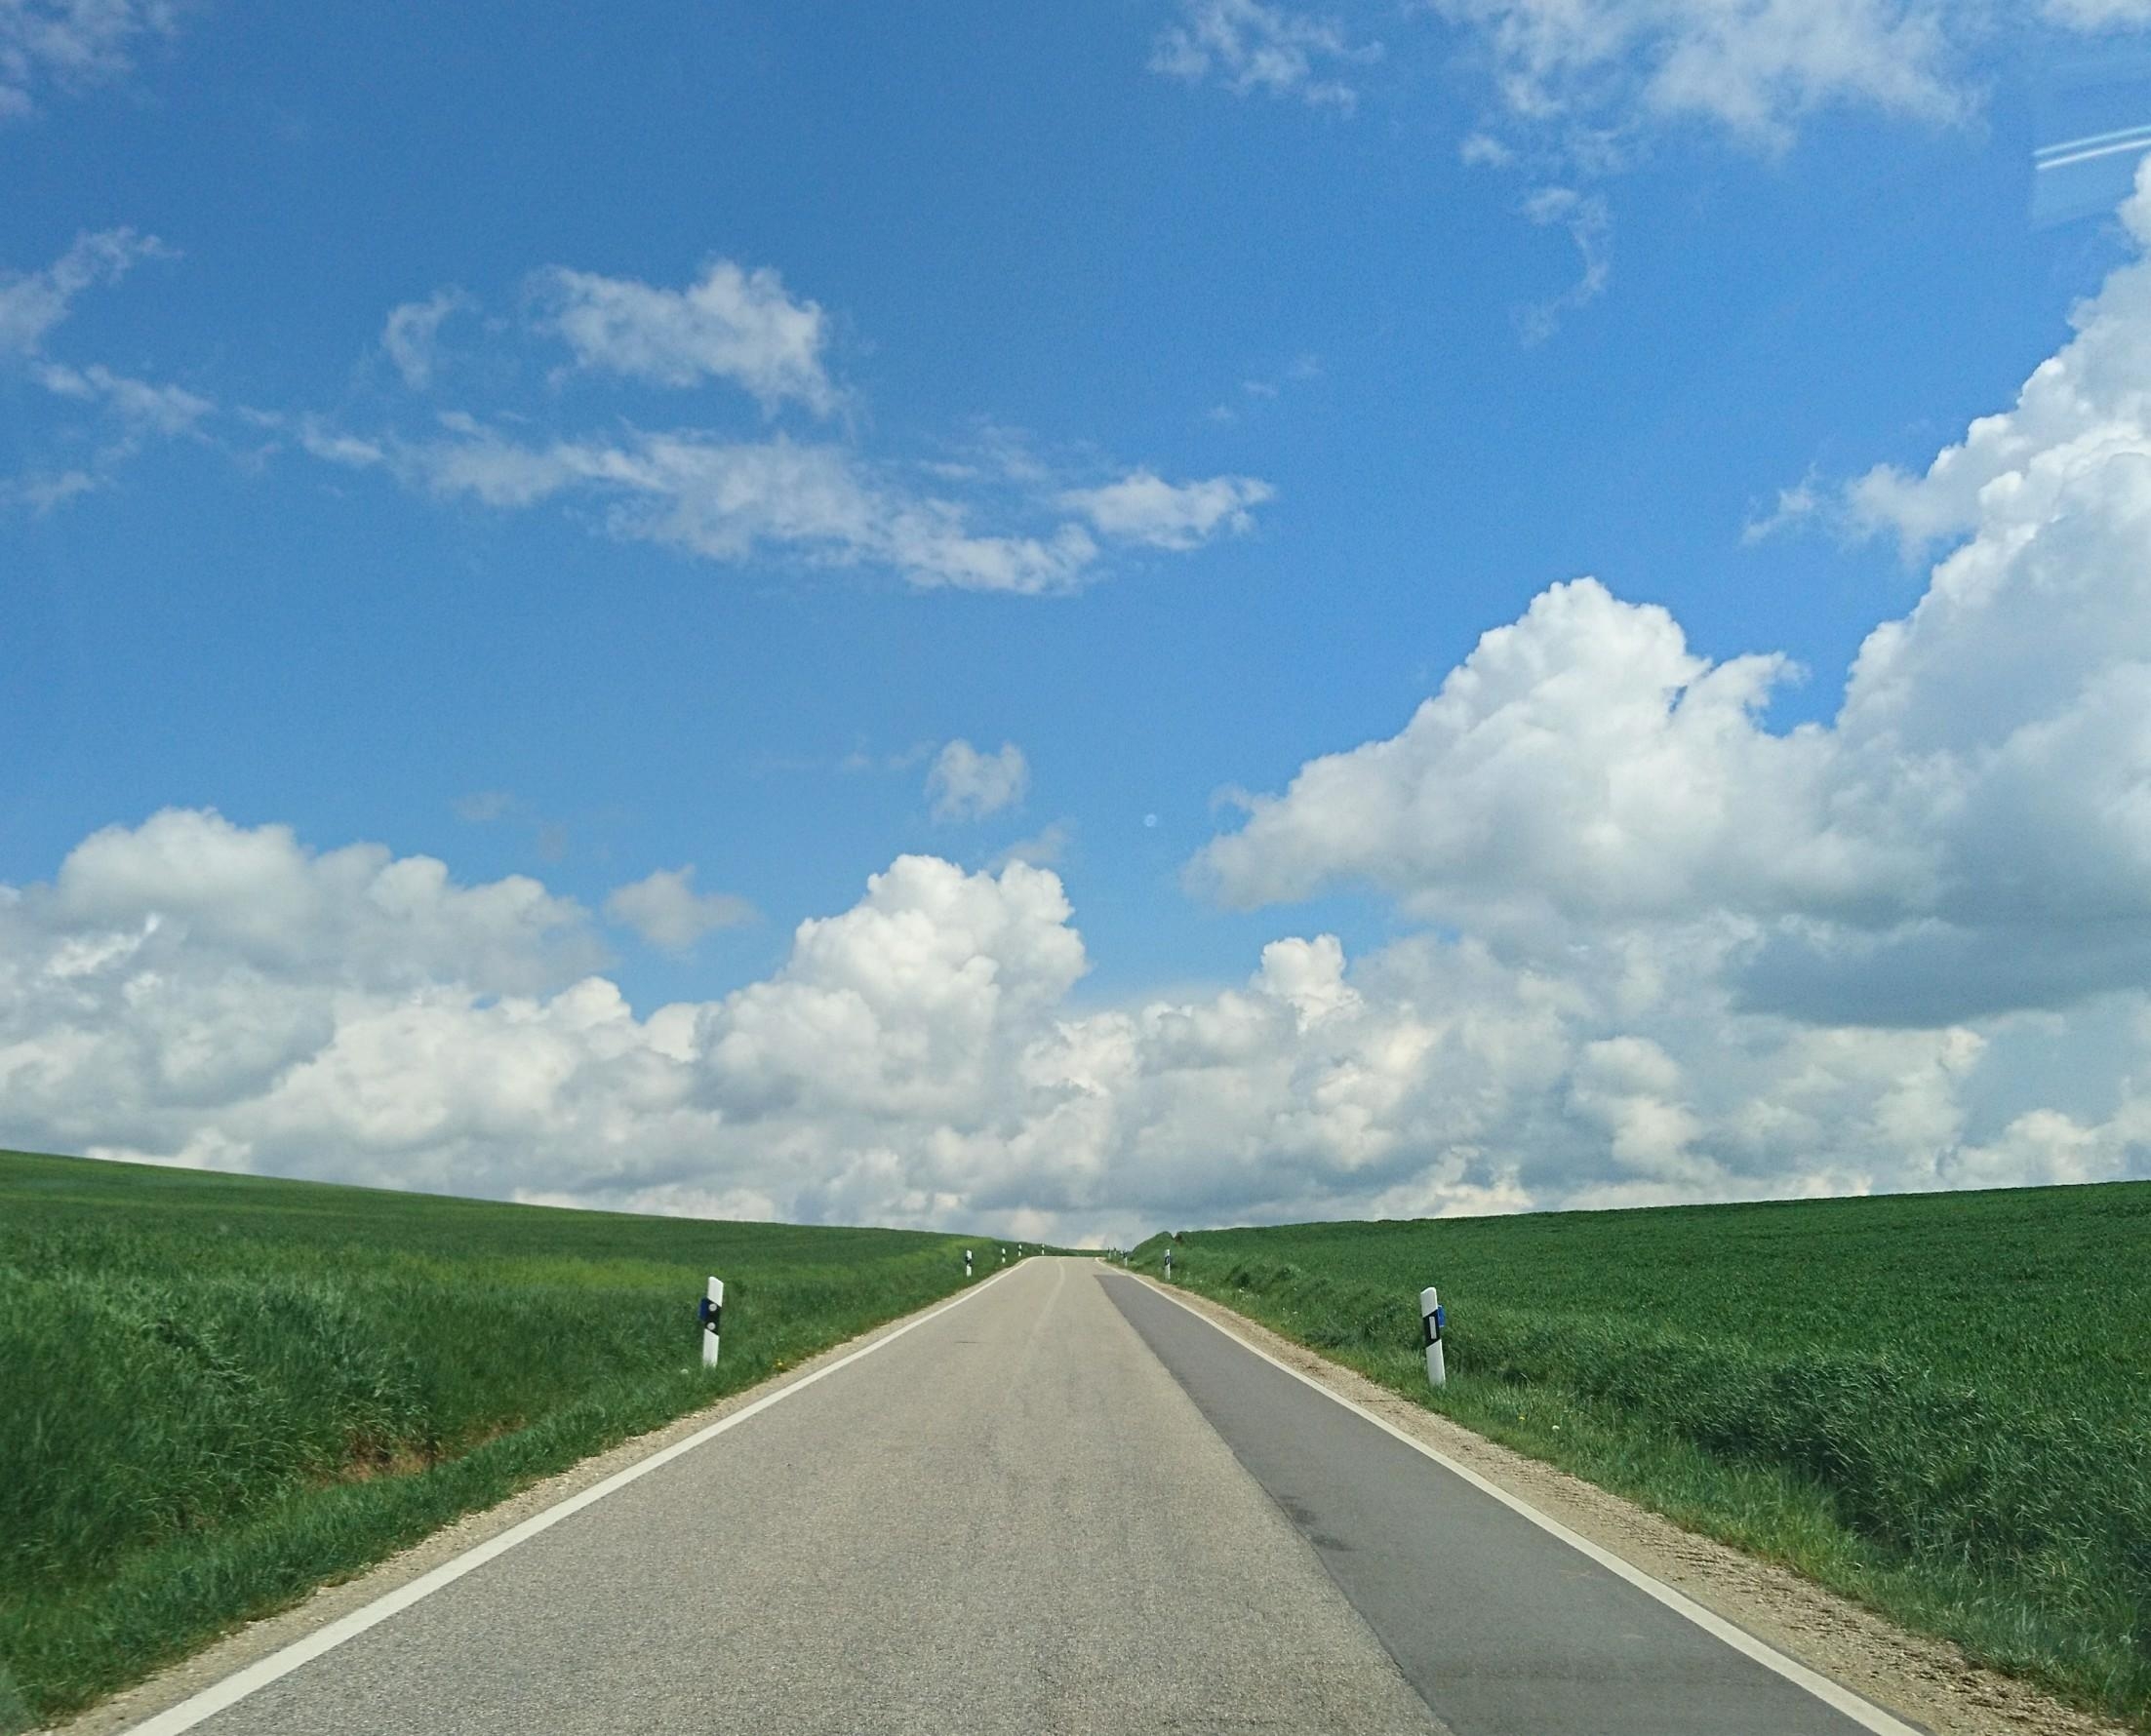 Gestern auf meiner Fahrt durch's bayerische Hinterland...

...Als würde man direkt in die #Wolken hinein fahren können ⛅